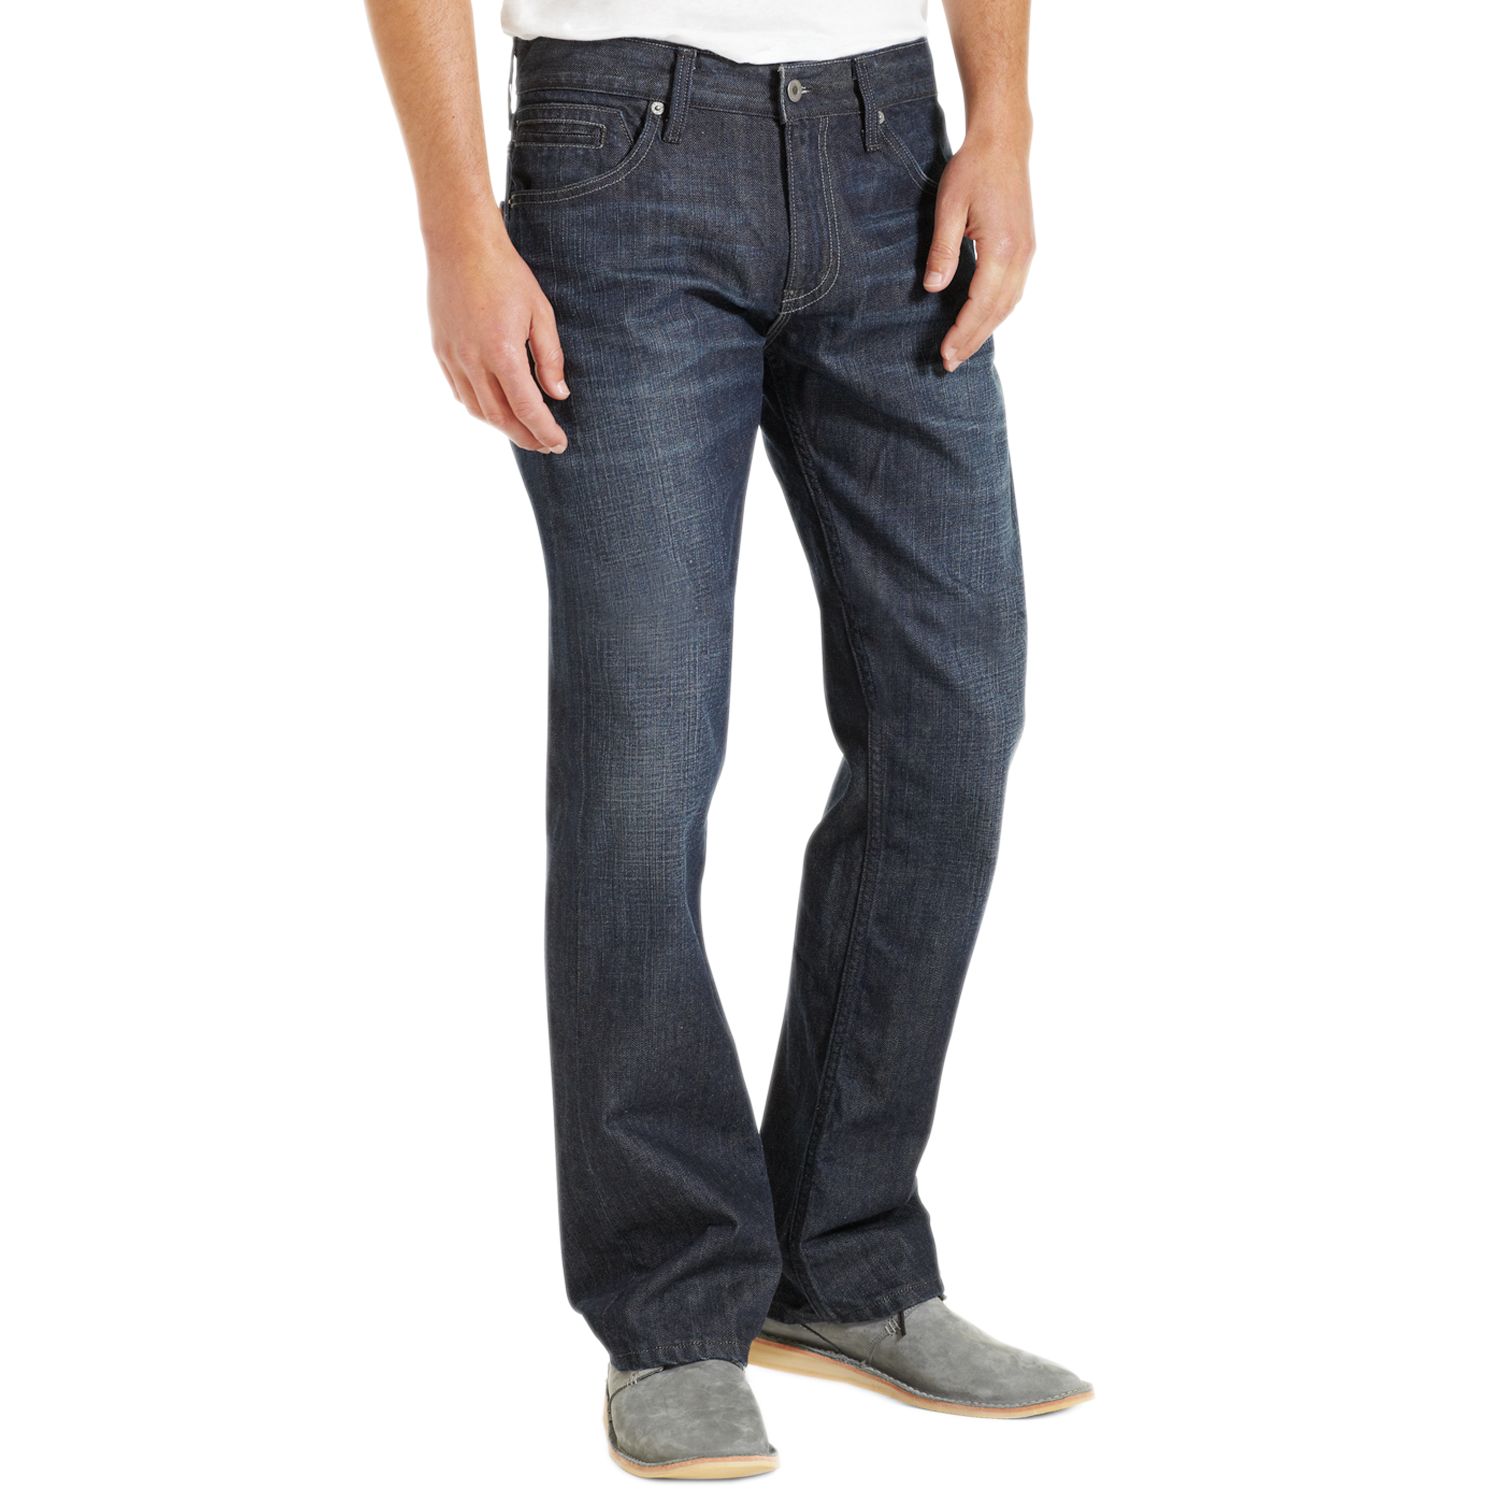 Levi's 527 Slim Bootcut Jeans - Men